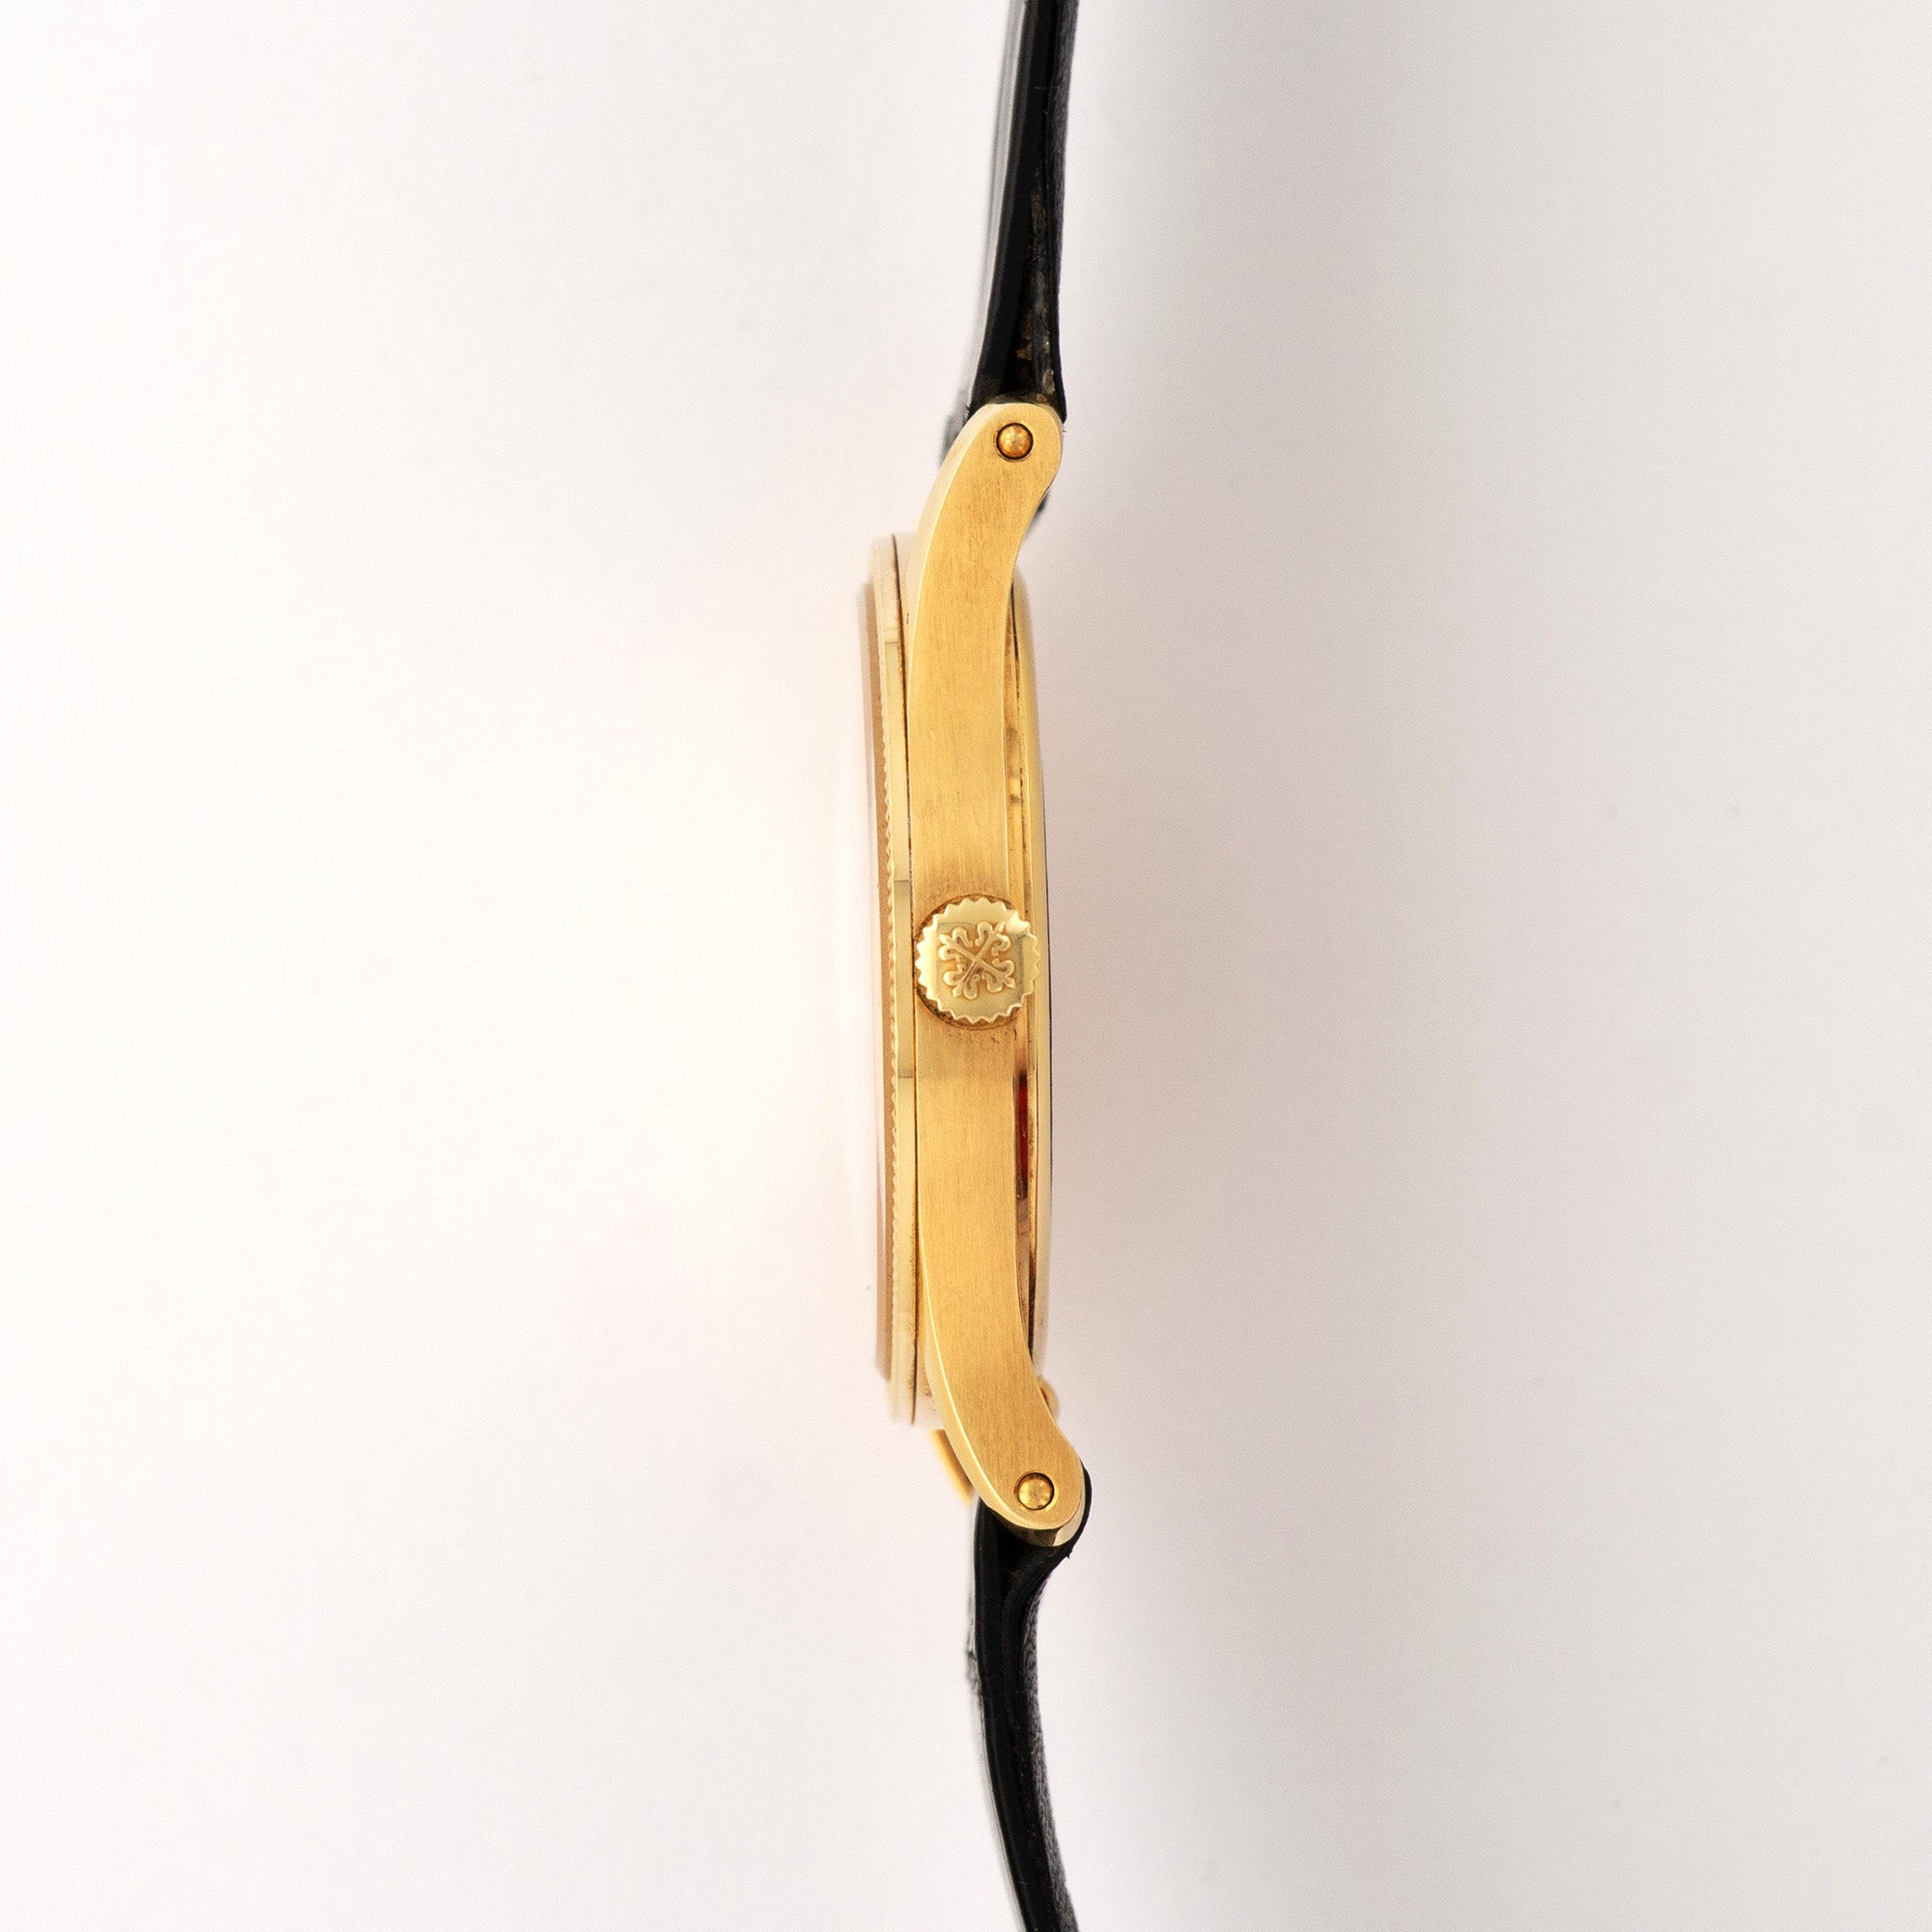 Patek Philippe - Patek Philippe Yellow Gold Calatrava Watch Ref. 3796 - The Keystone Watches